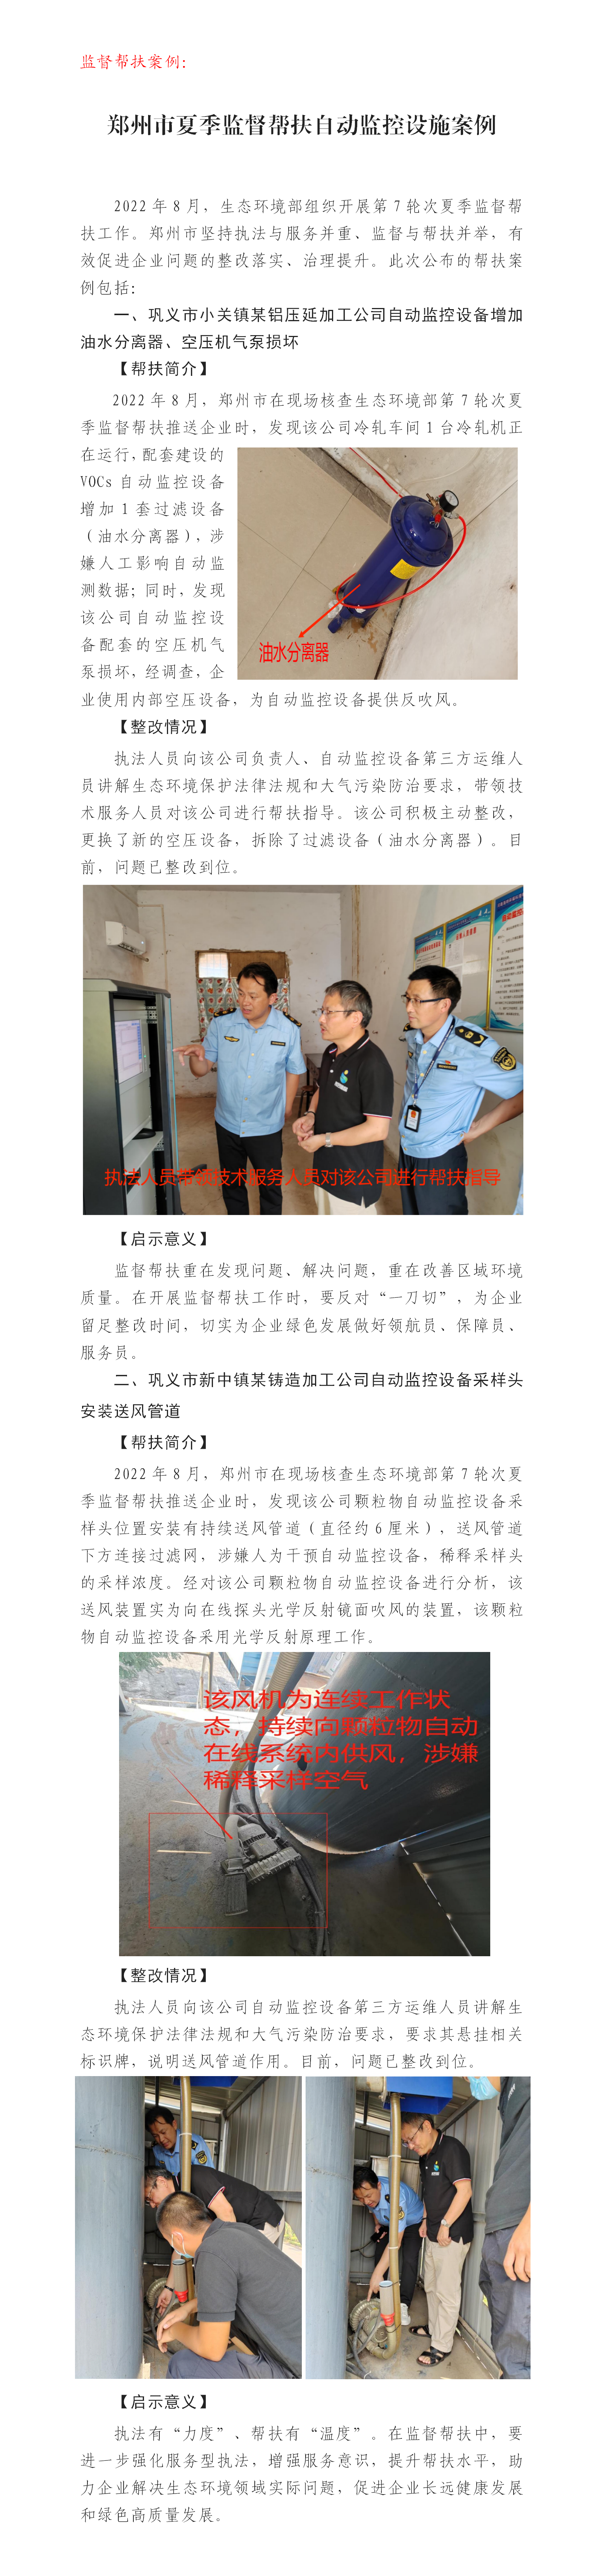 20220824--郑州市公布第7轮次夏季监督帮扶自动监控设施帮扶案例_01.png